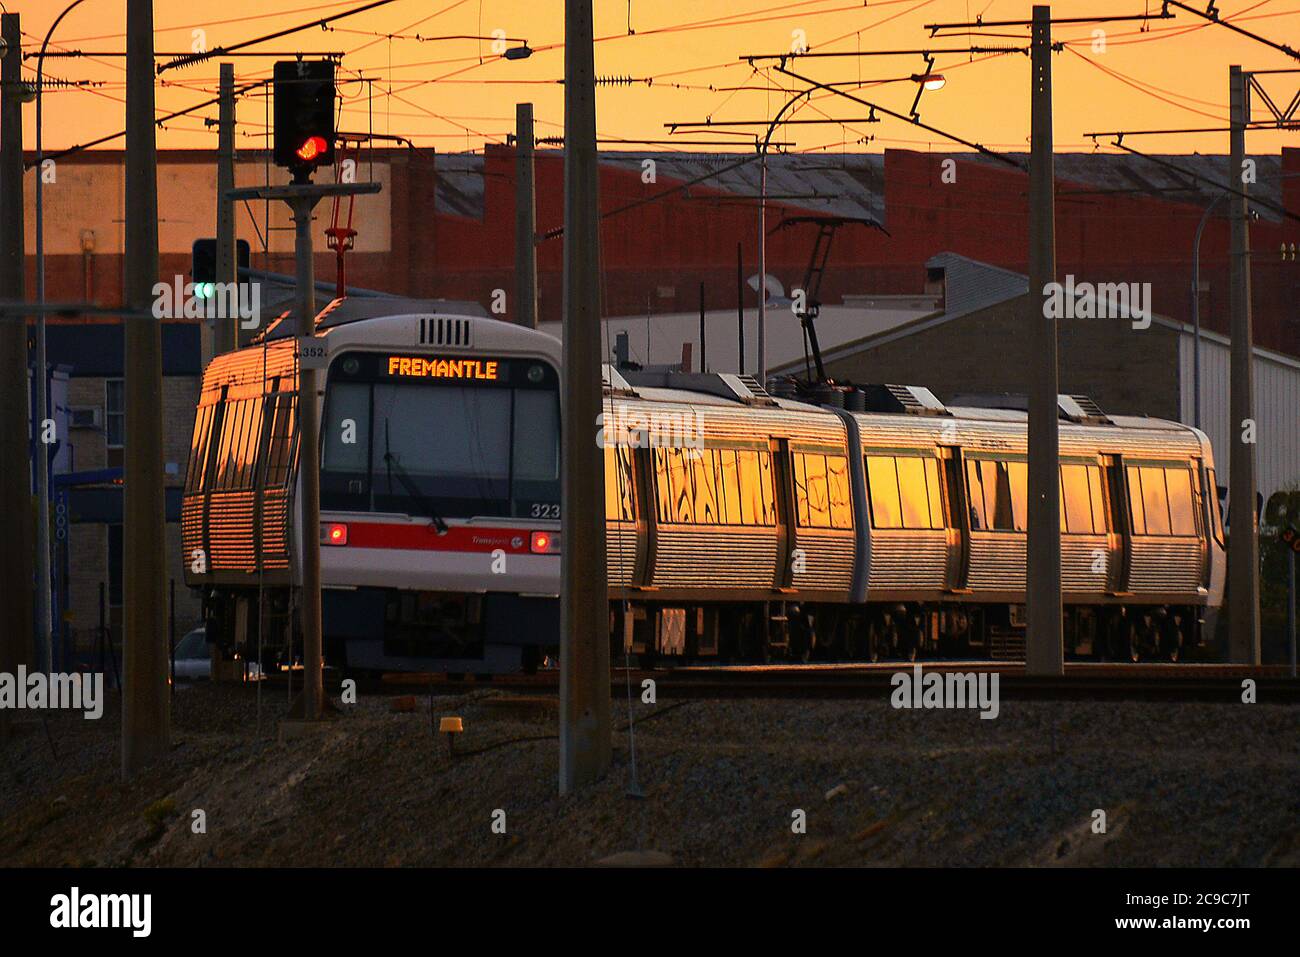 Coucher de soleil reflétant les travaux métalliques d'un train électrique, en direction de Fremantle, Australie occidentale. Banque D'Images